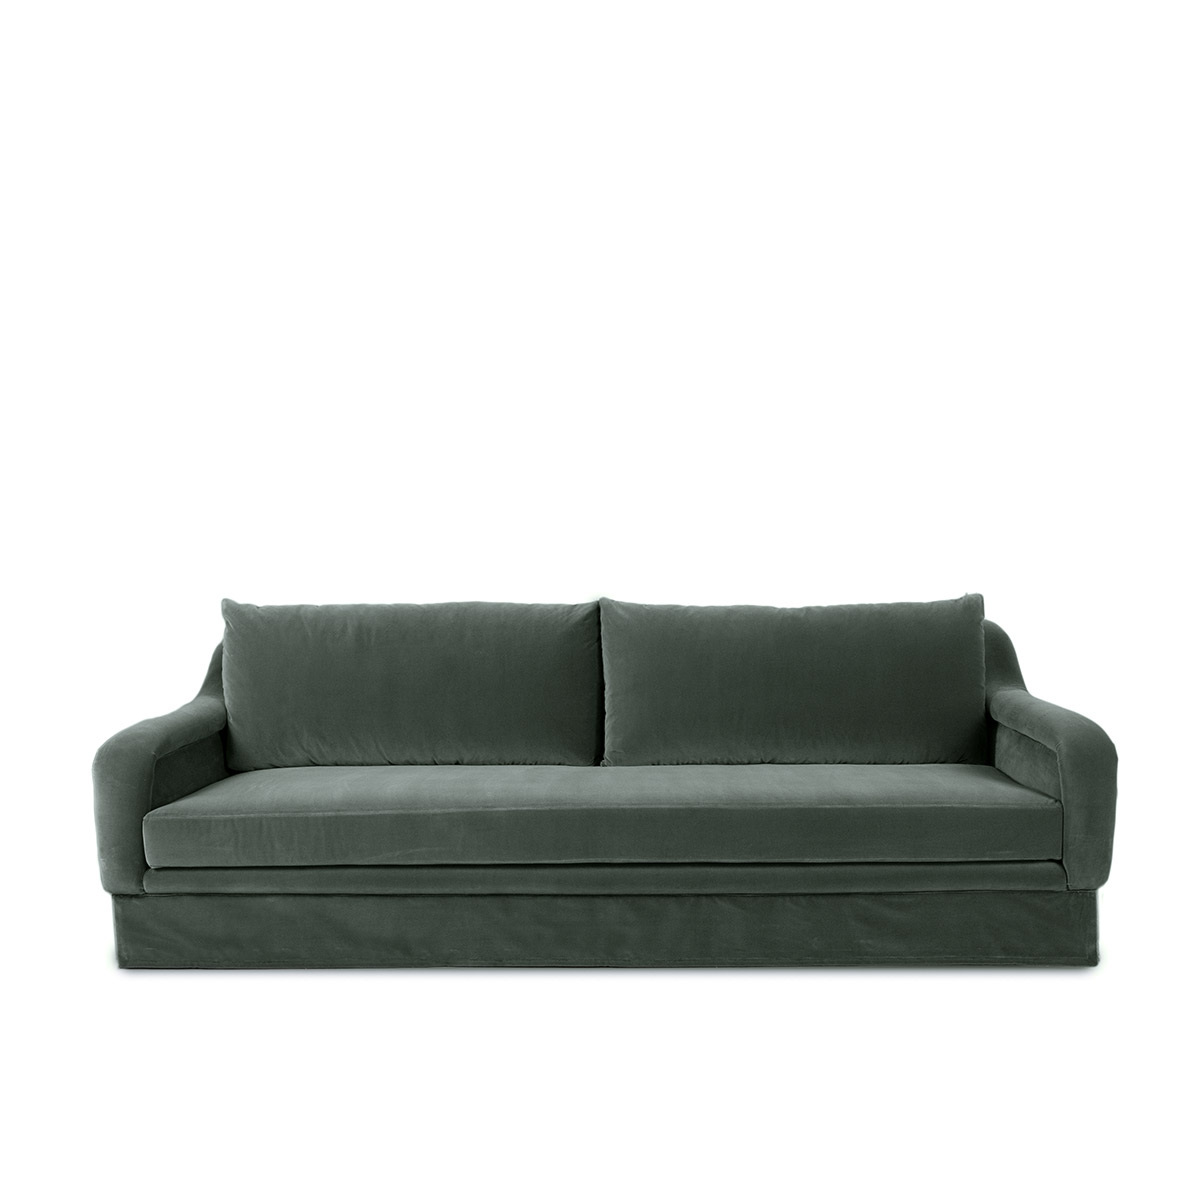 Sofa Yasmine, W230 x D105 x H88 cm / Khaki / Velvet - image 1